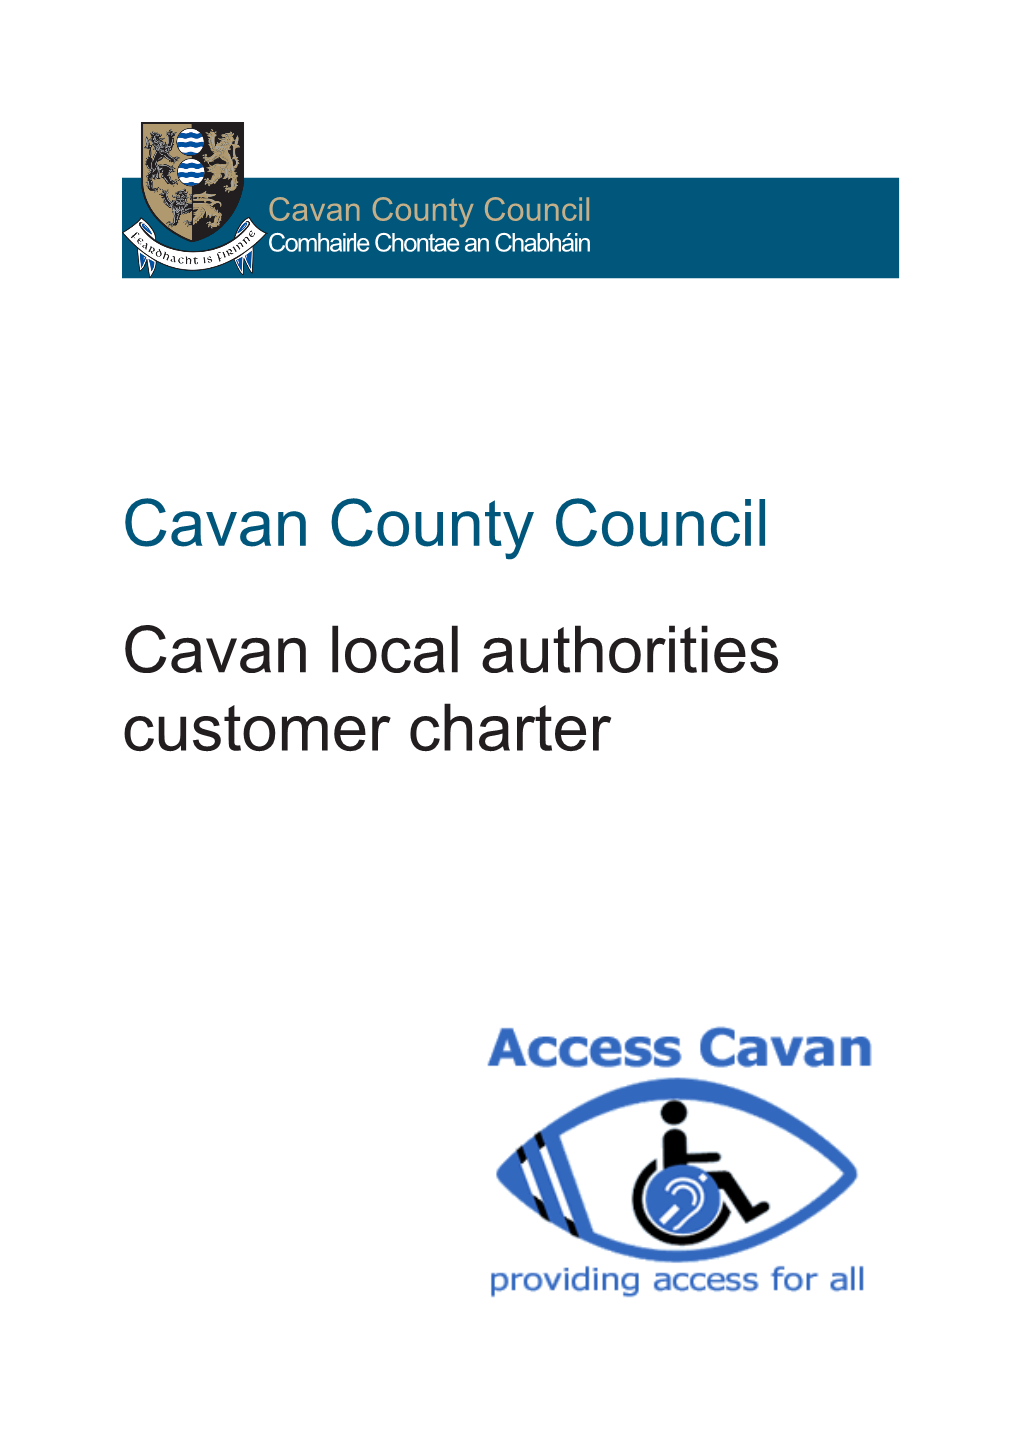 Cavan County Council Cavan Local Authorities Customer Charter Cavan County Council Cavan Local Authorities Customer Charter Our Commitment to You